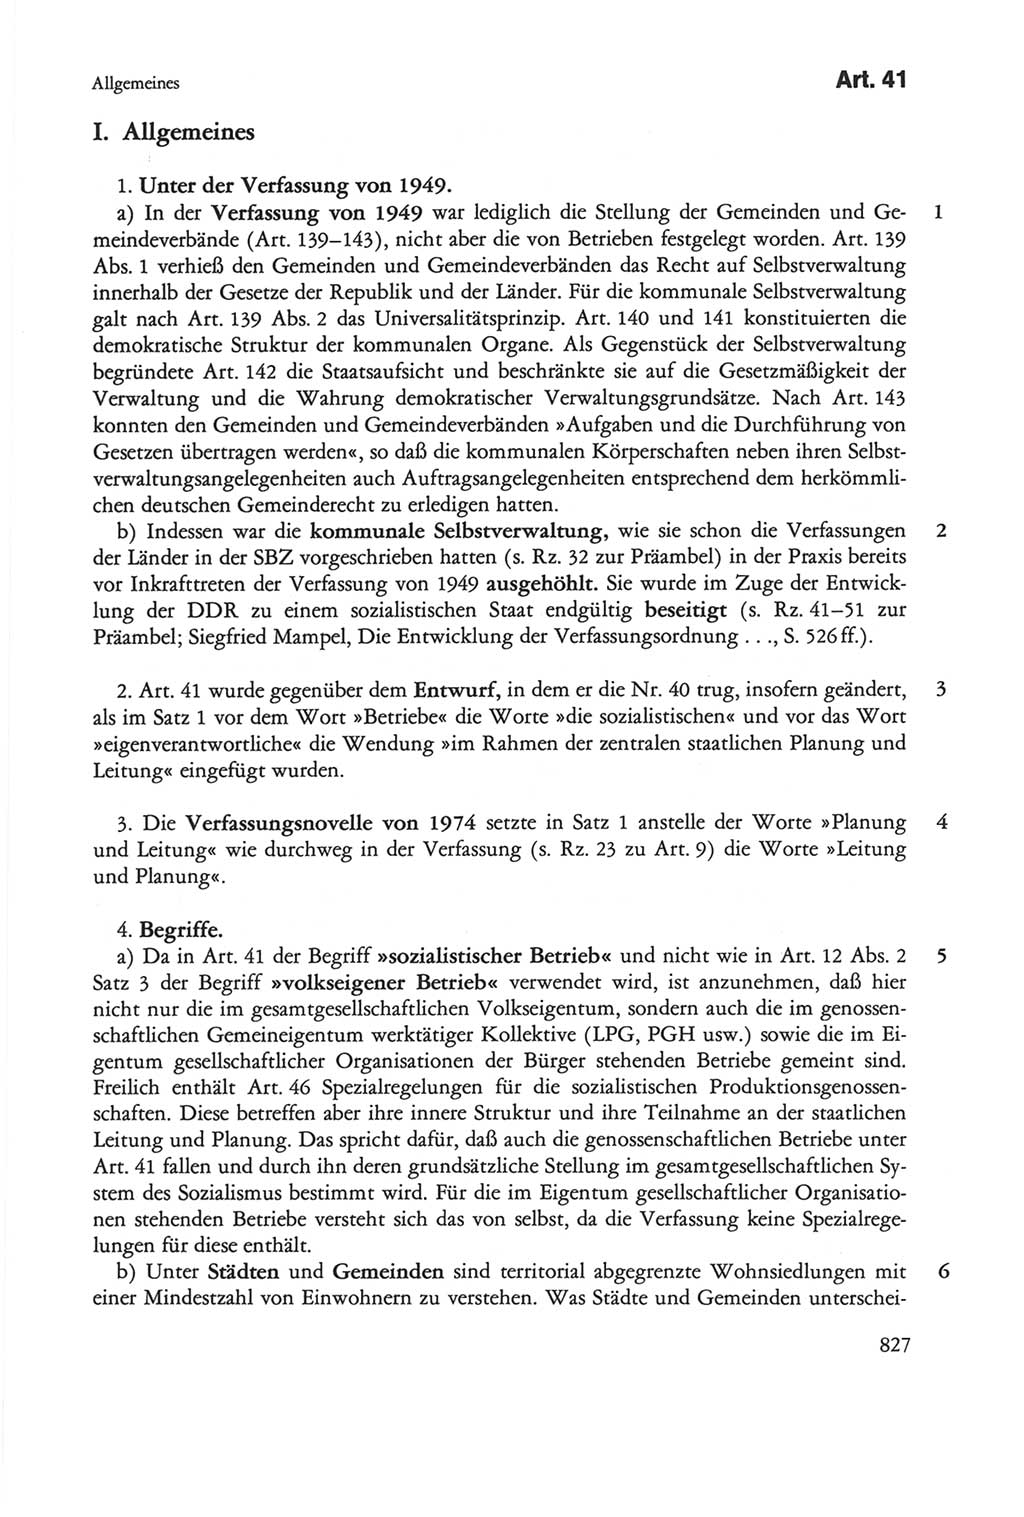 Die sozialistische Verfassung der Deutschen Demokratischen Republik (DDR), Kommentar mit einem Nachtrag 1997, Seite 827 (Soz. Verf. DDR Komm. Nachtr. 1997, S. 827)